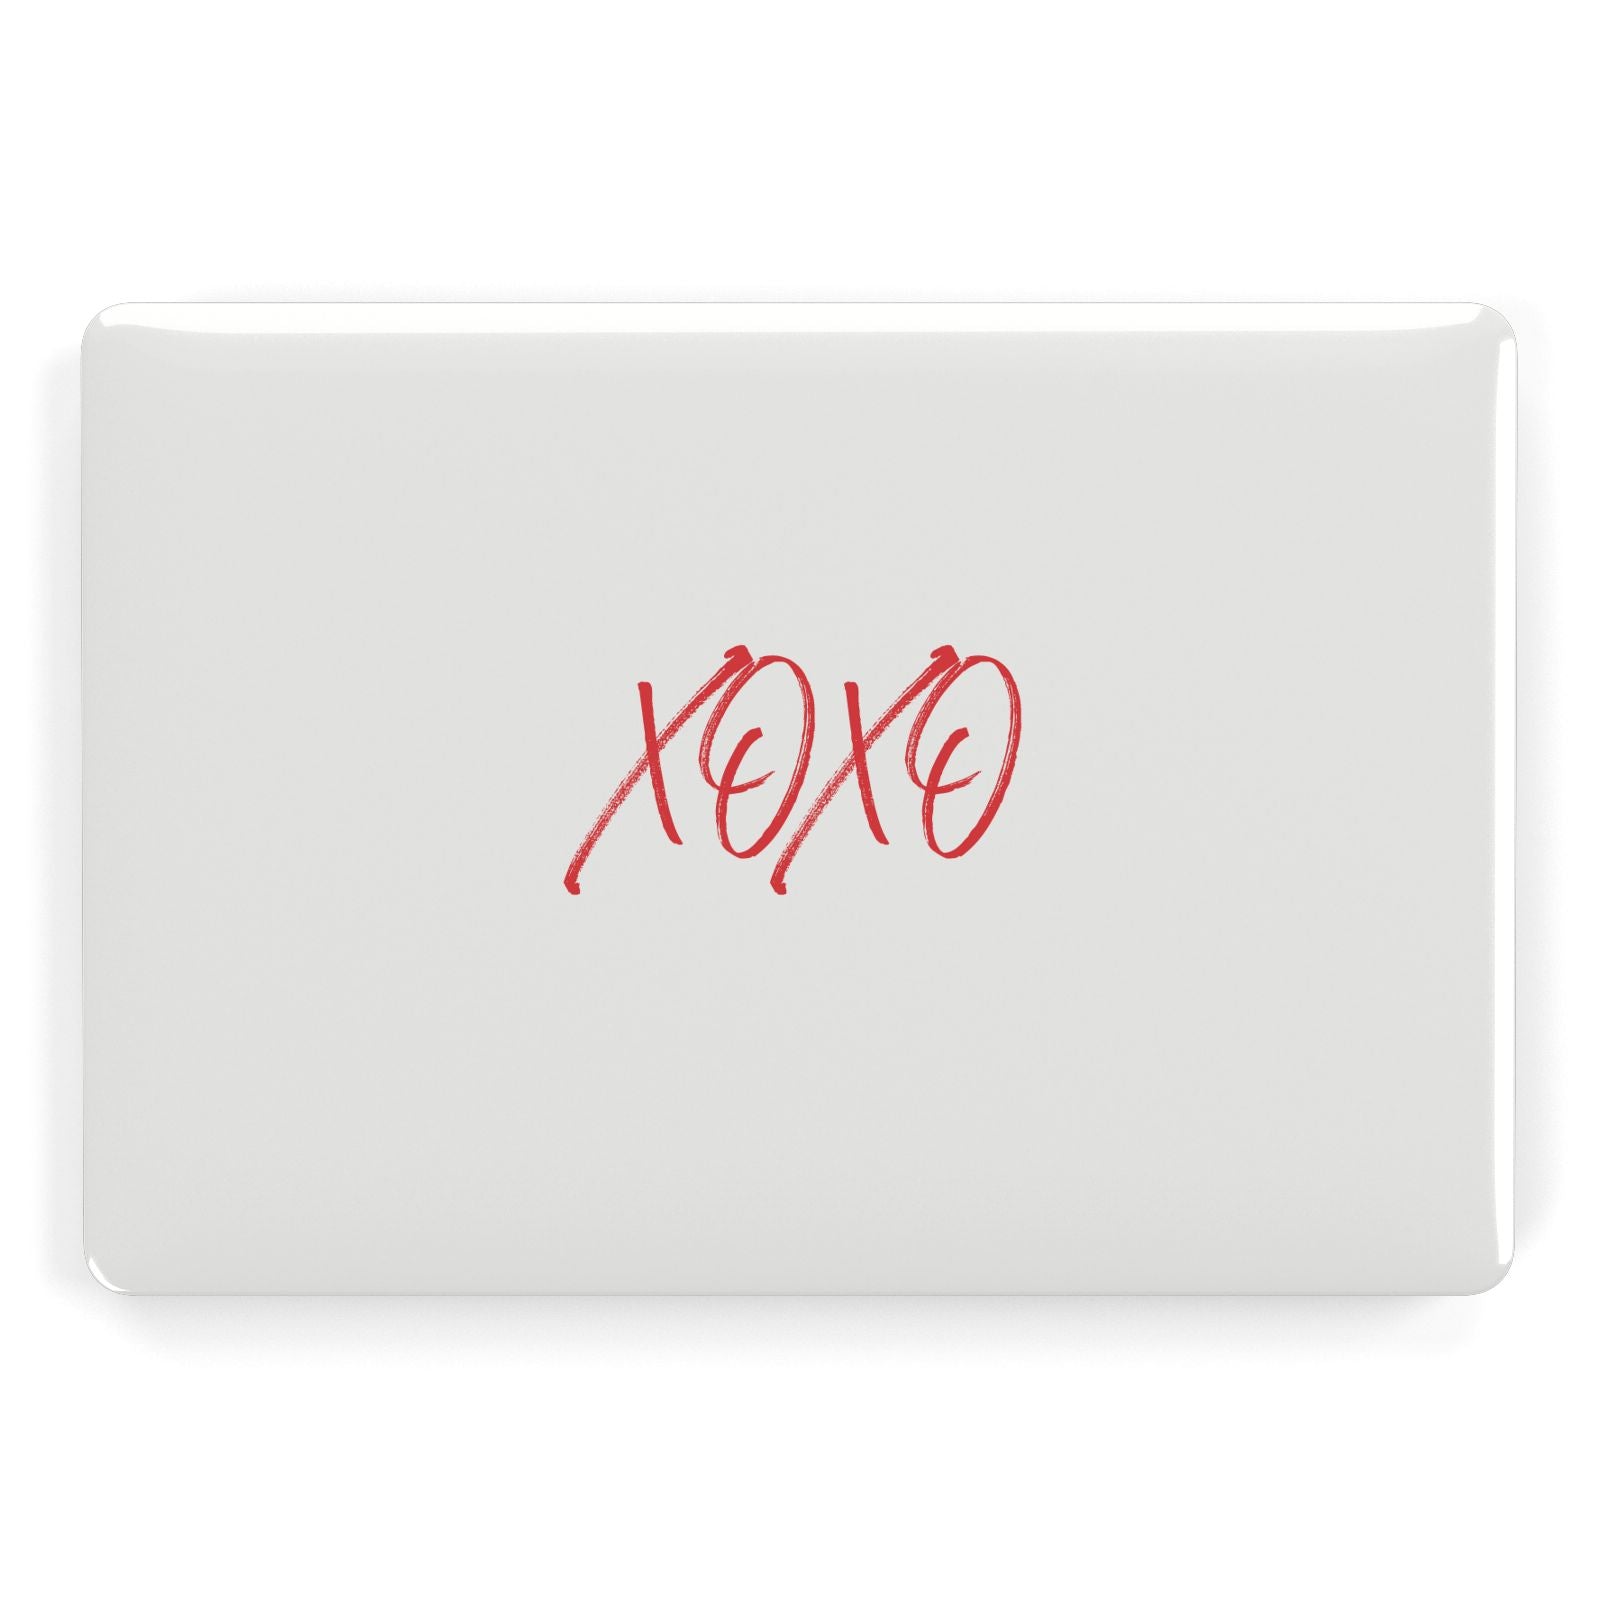 I love you like xo Apple MacBook Case